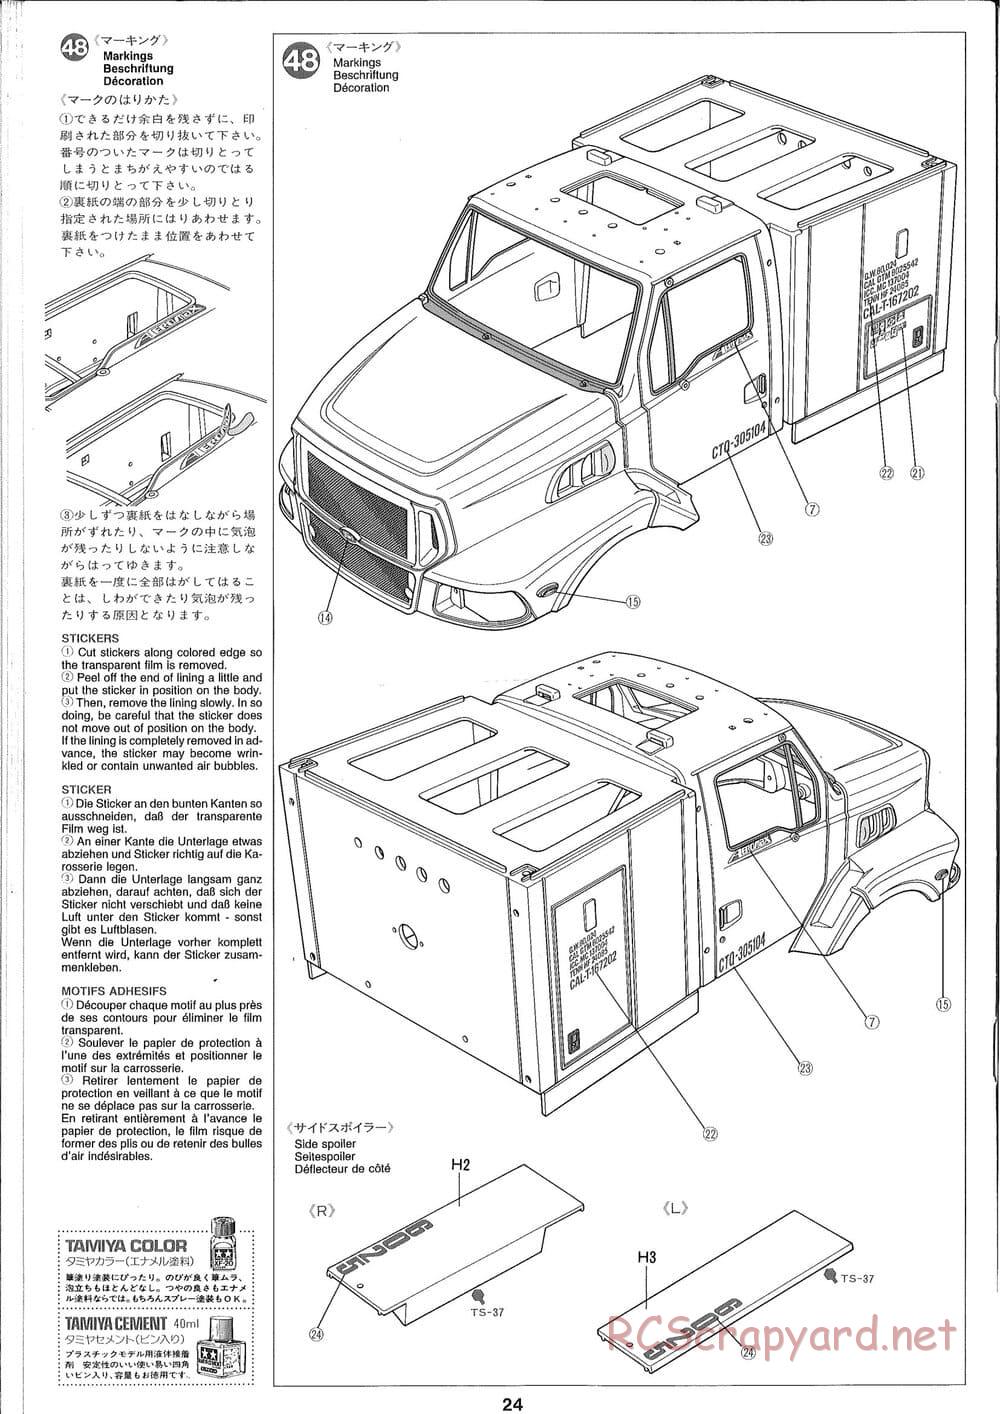 Tamiya - Ford Aeromax - Manual - Page 24